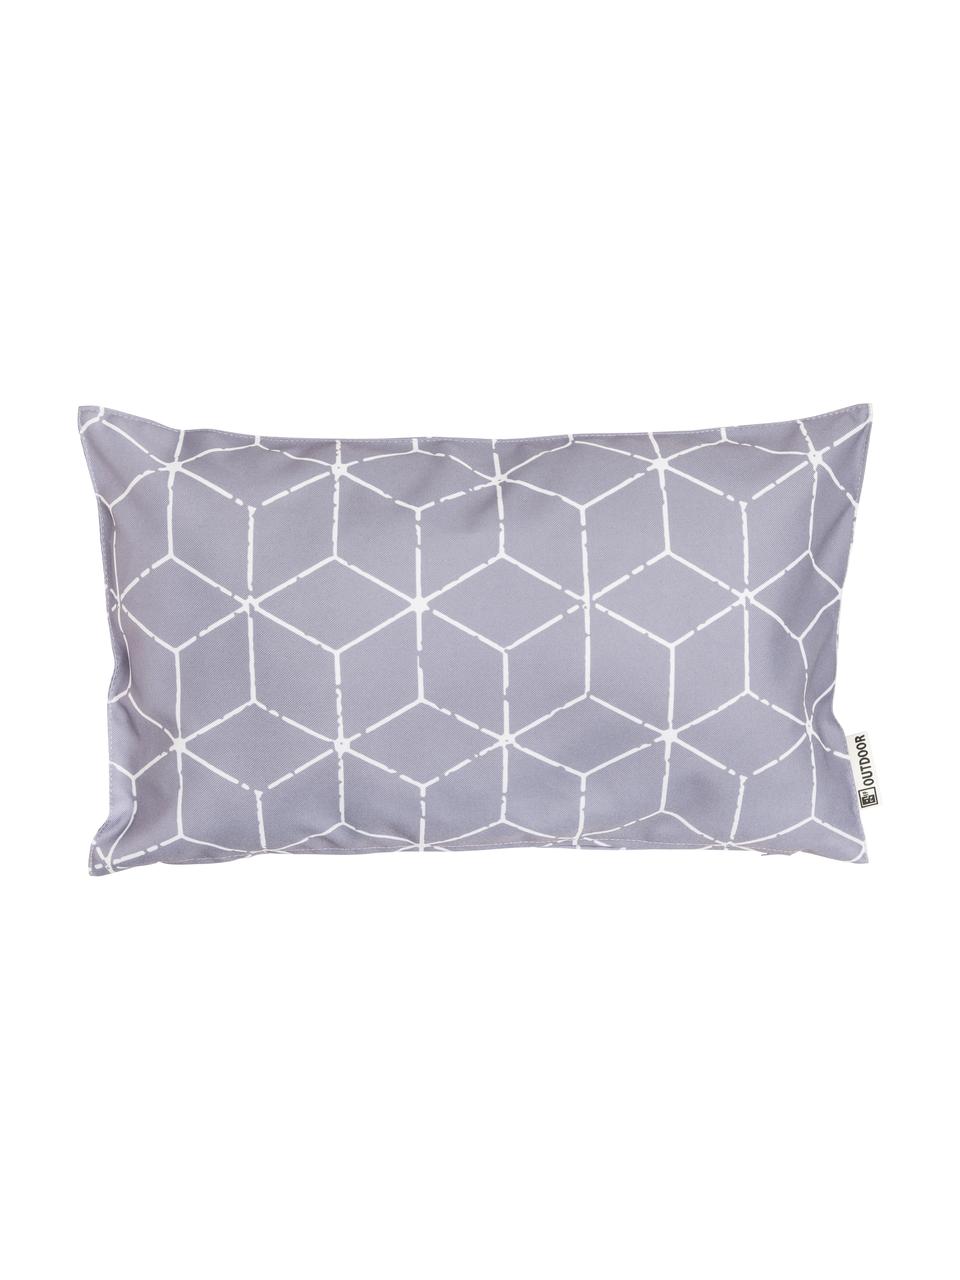 Outdoor-Kissen Cube mit grafischem Muster in Grau/Weiß, mit Inlett, 100% Polyester, Grau, Weiß, 30 x 50 cm